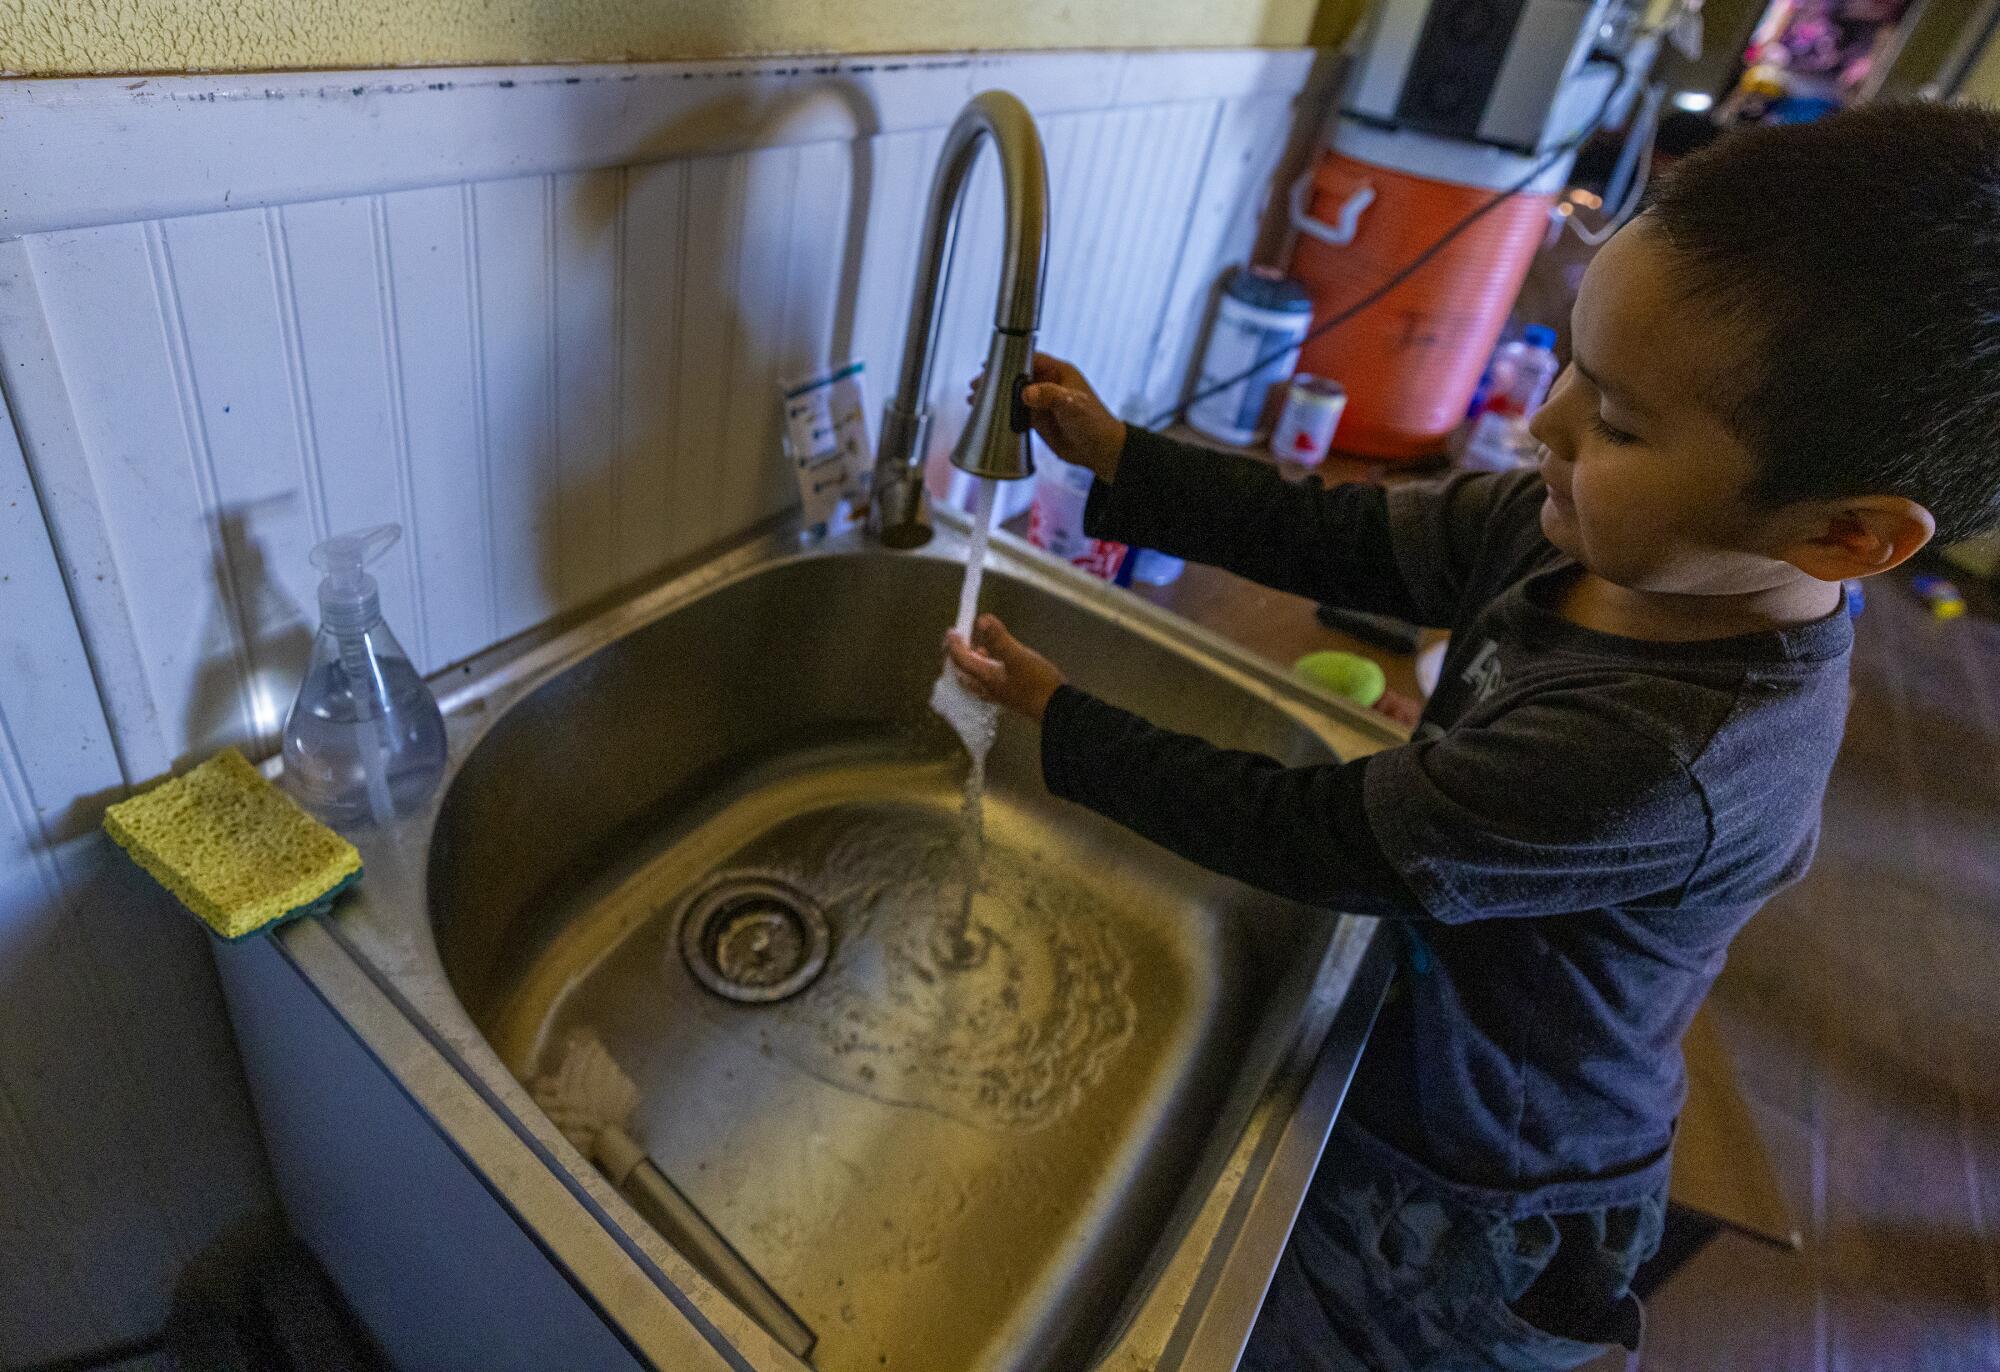 4 岁的亚历克斯·埃西蒂 (Alex Etsitty) 在纳瓦霍族的家中洗手。